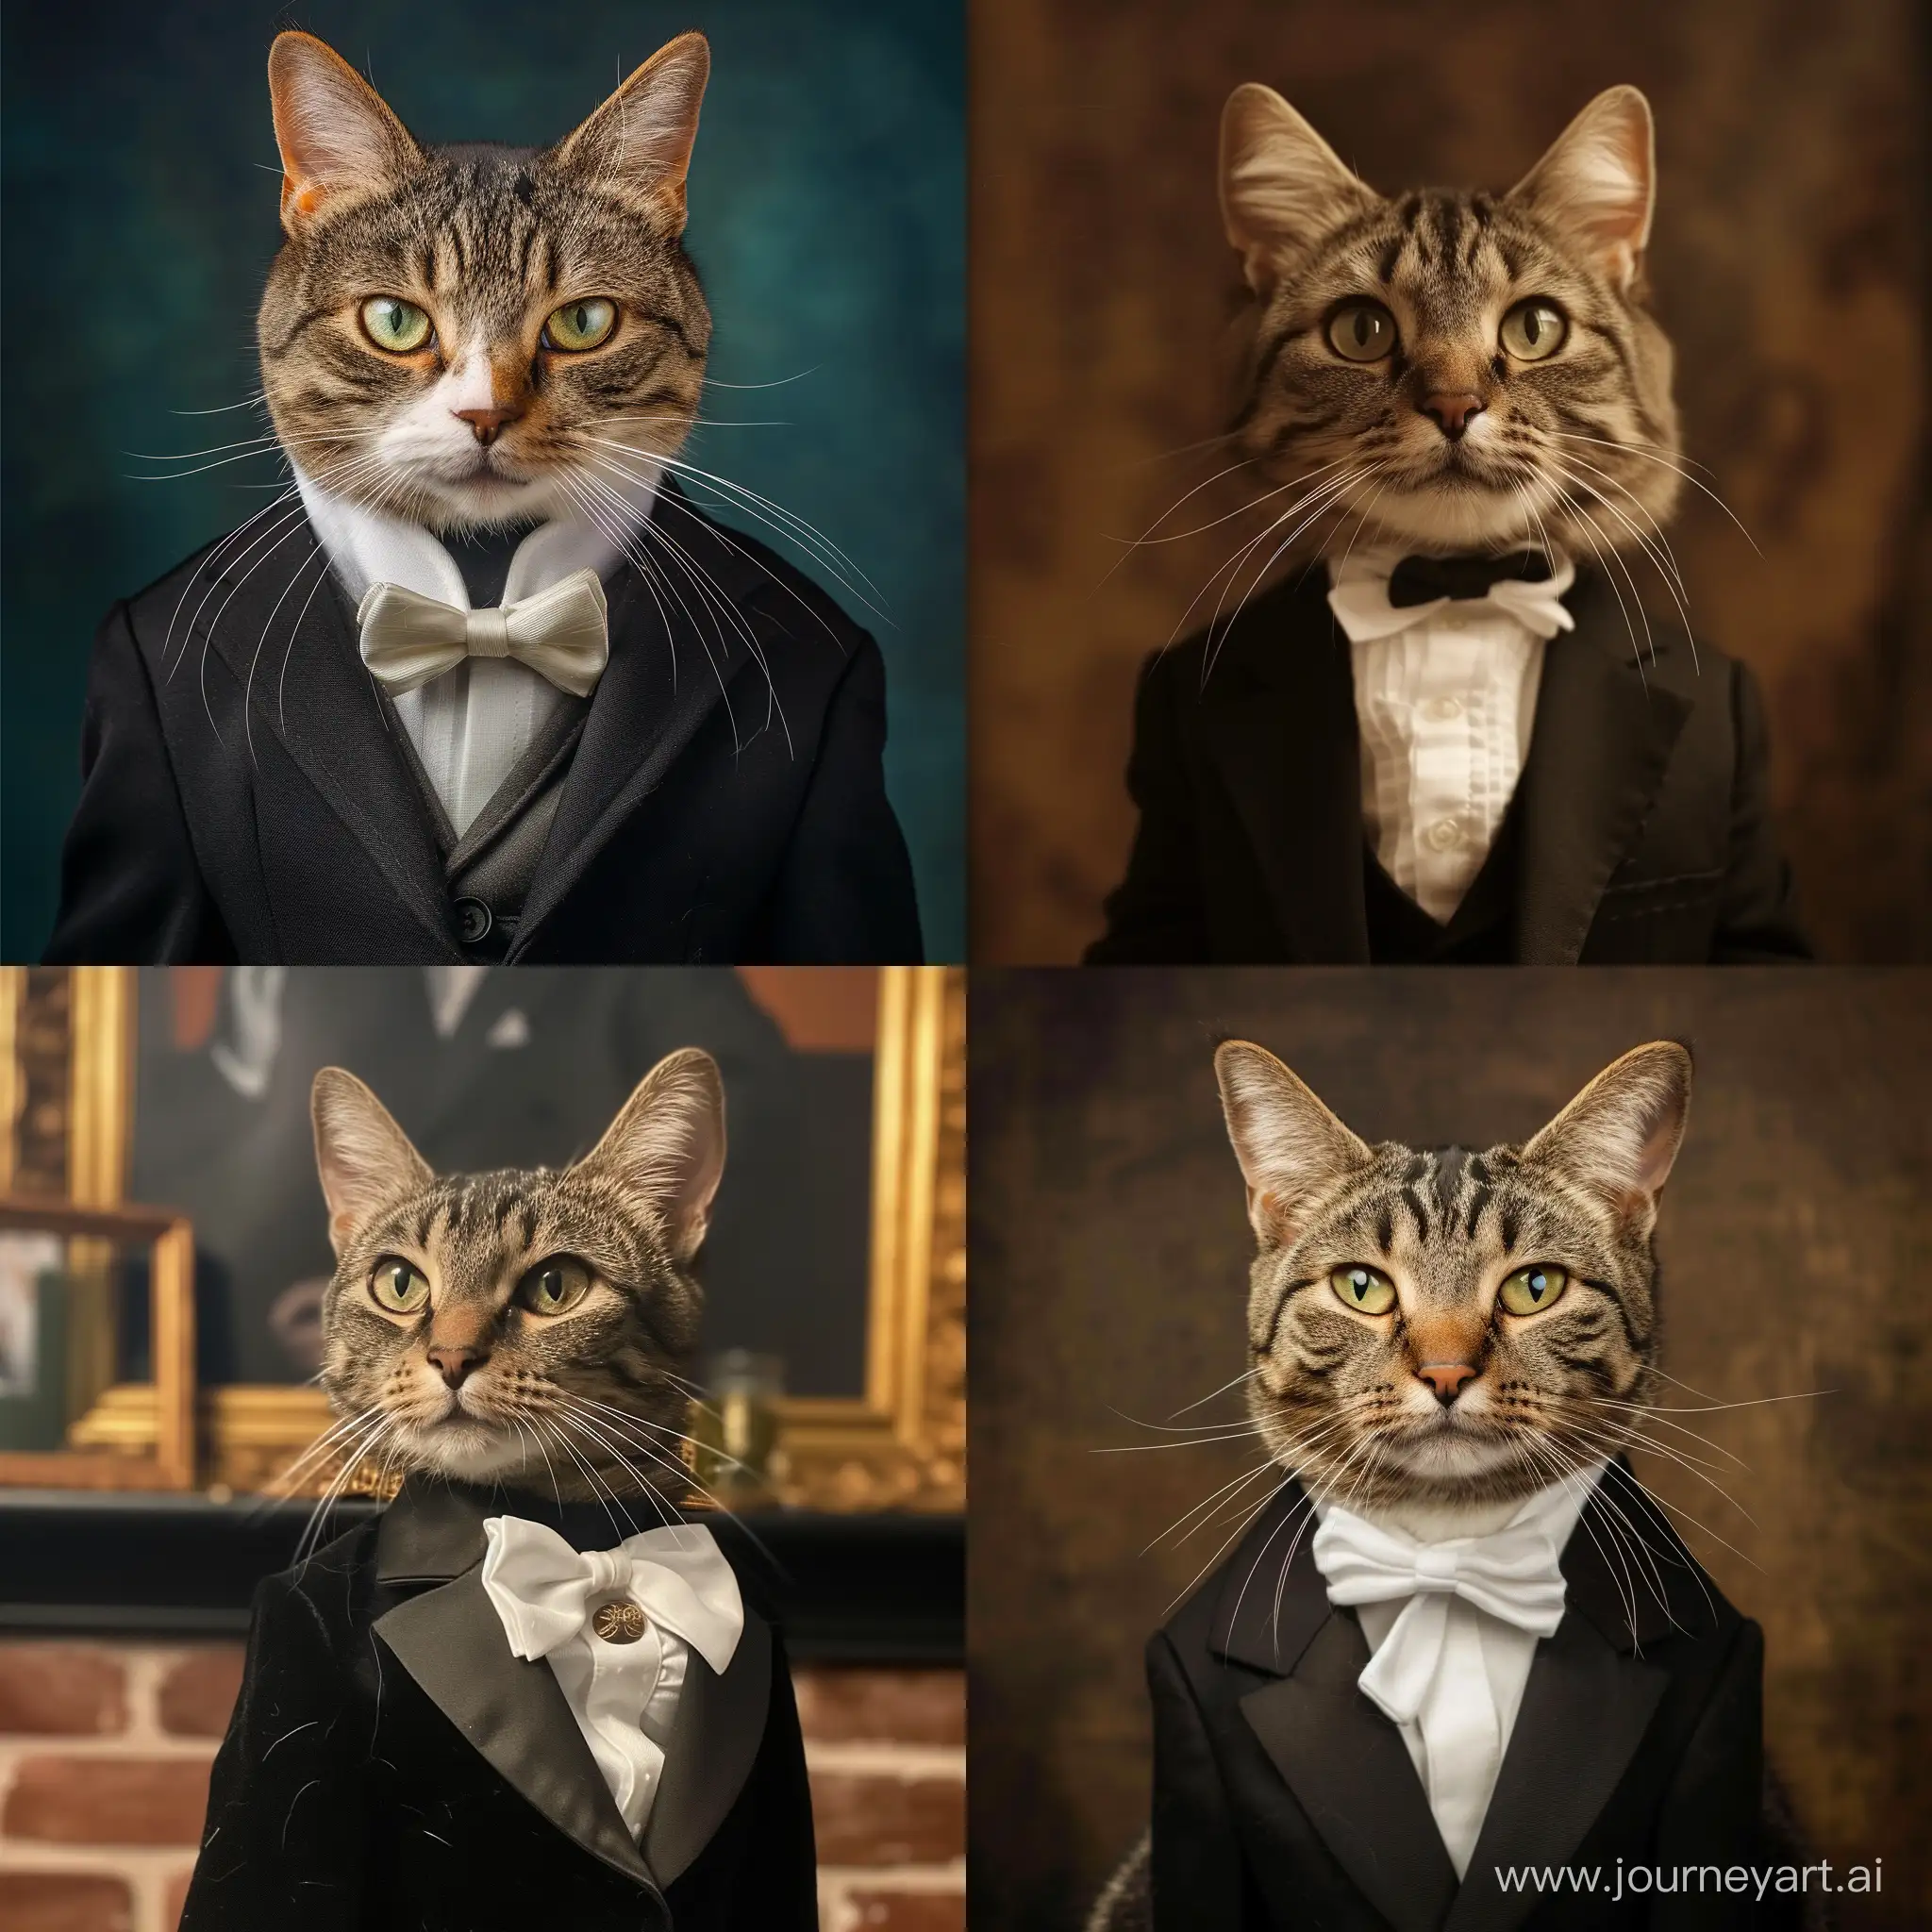 Elegant-Cat-Passport-Photo-in-Tuxedo